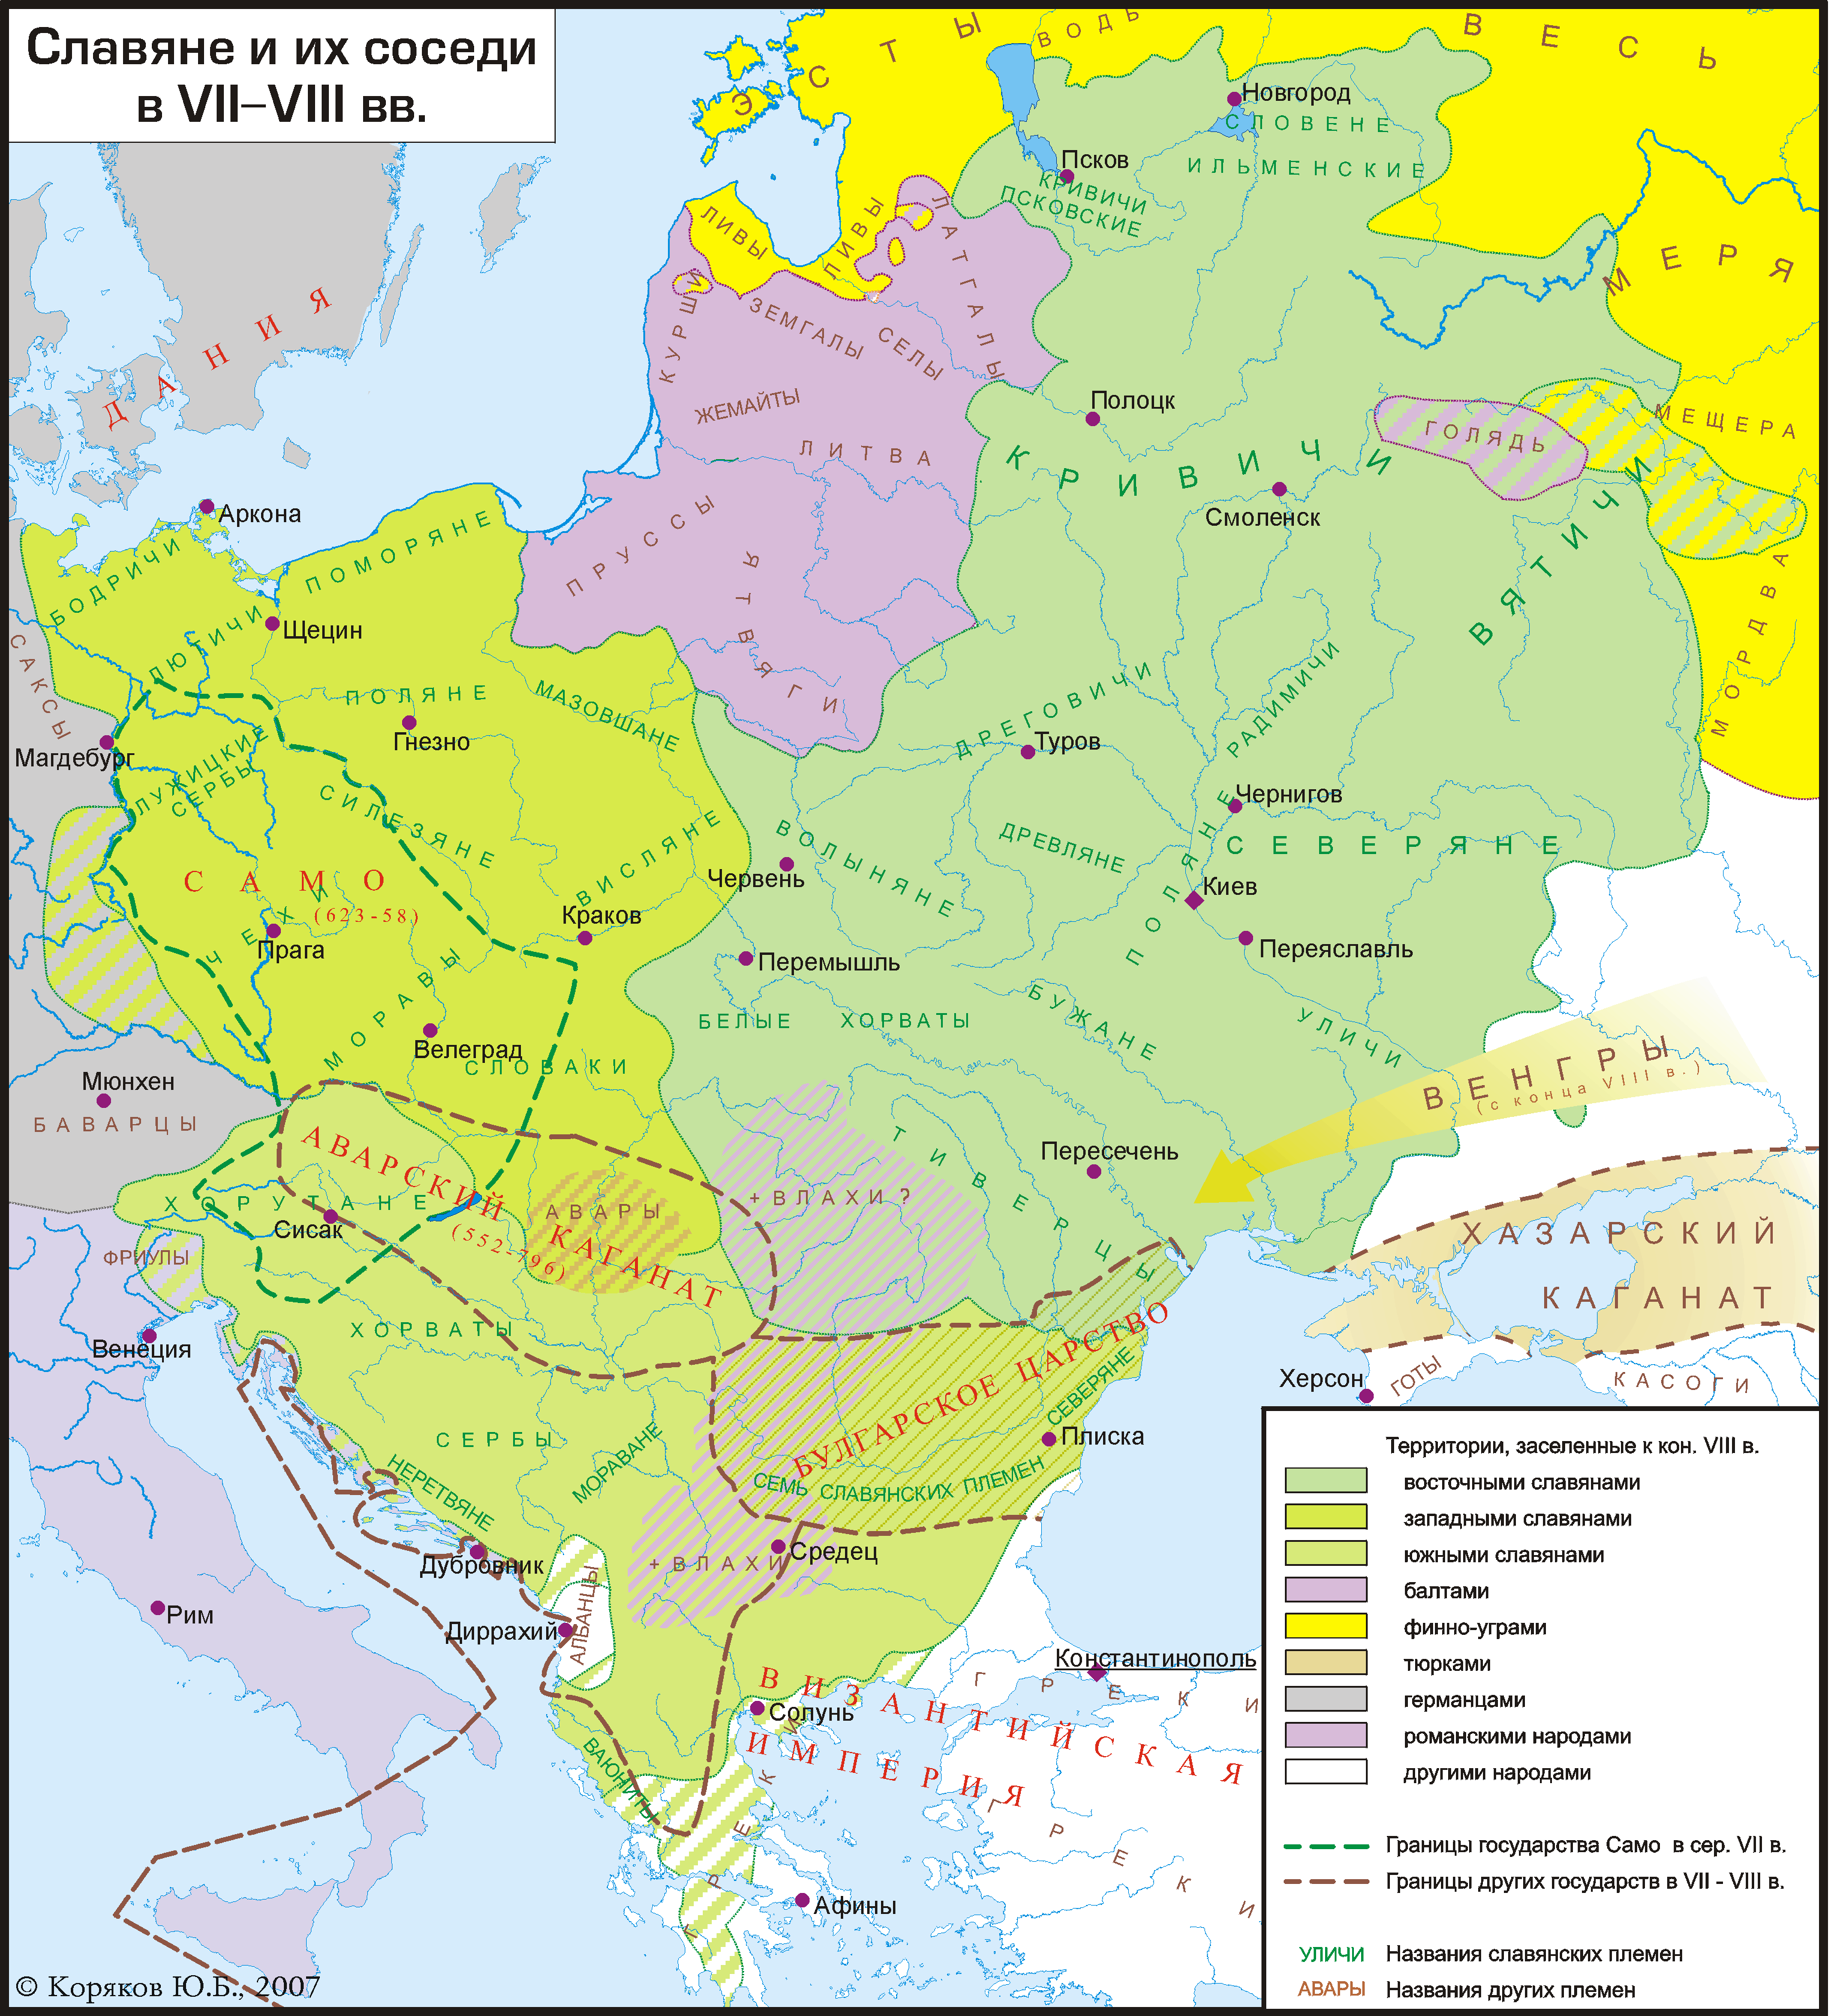 Восточная Европа в V-VI столетиях нашей эры